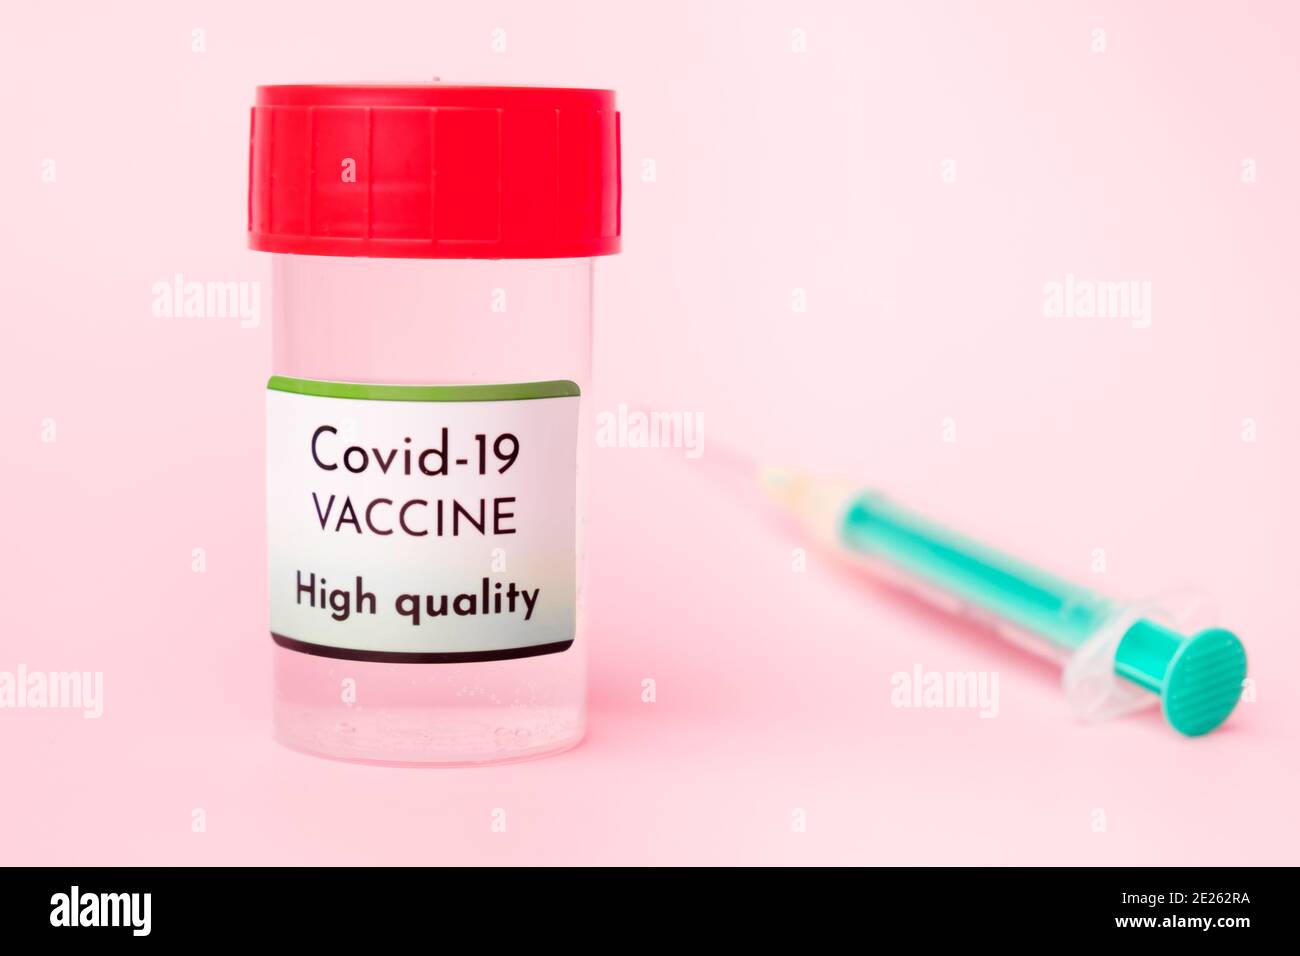 Vaccino Covid-19 di alta qualità in flacone e siringa monouso per iniezione su fondo rosa. Prevenzione del coronavirus, Sars-Cov-2. Foto Stock